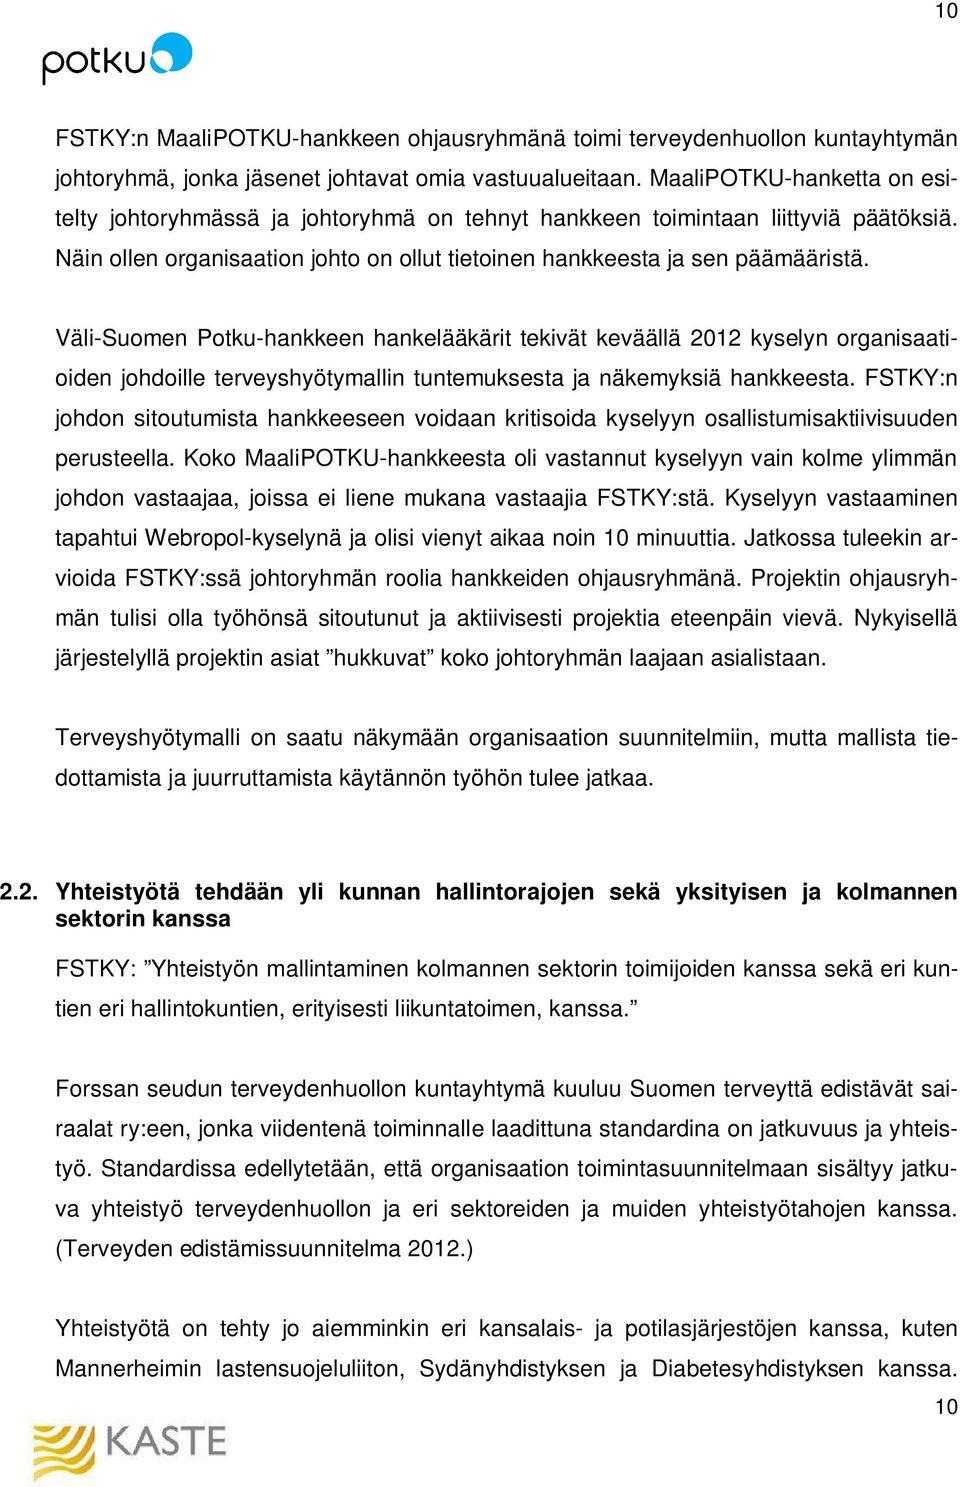 Väli-Suomen Potku-hankkeen hankelääkärit tekivät keväällä 2012 kyselyn organisaatioiden johdoille terveyshyötymallin tuntemuksesta ja näkemyksiä hankkeesta.